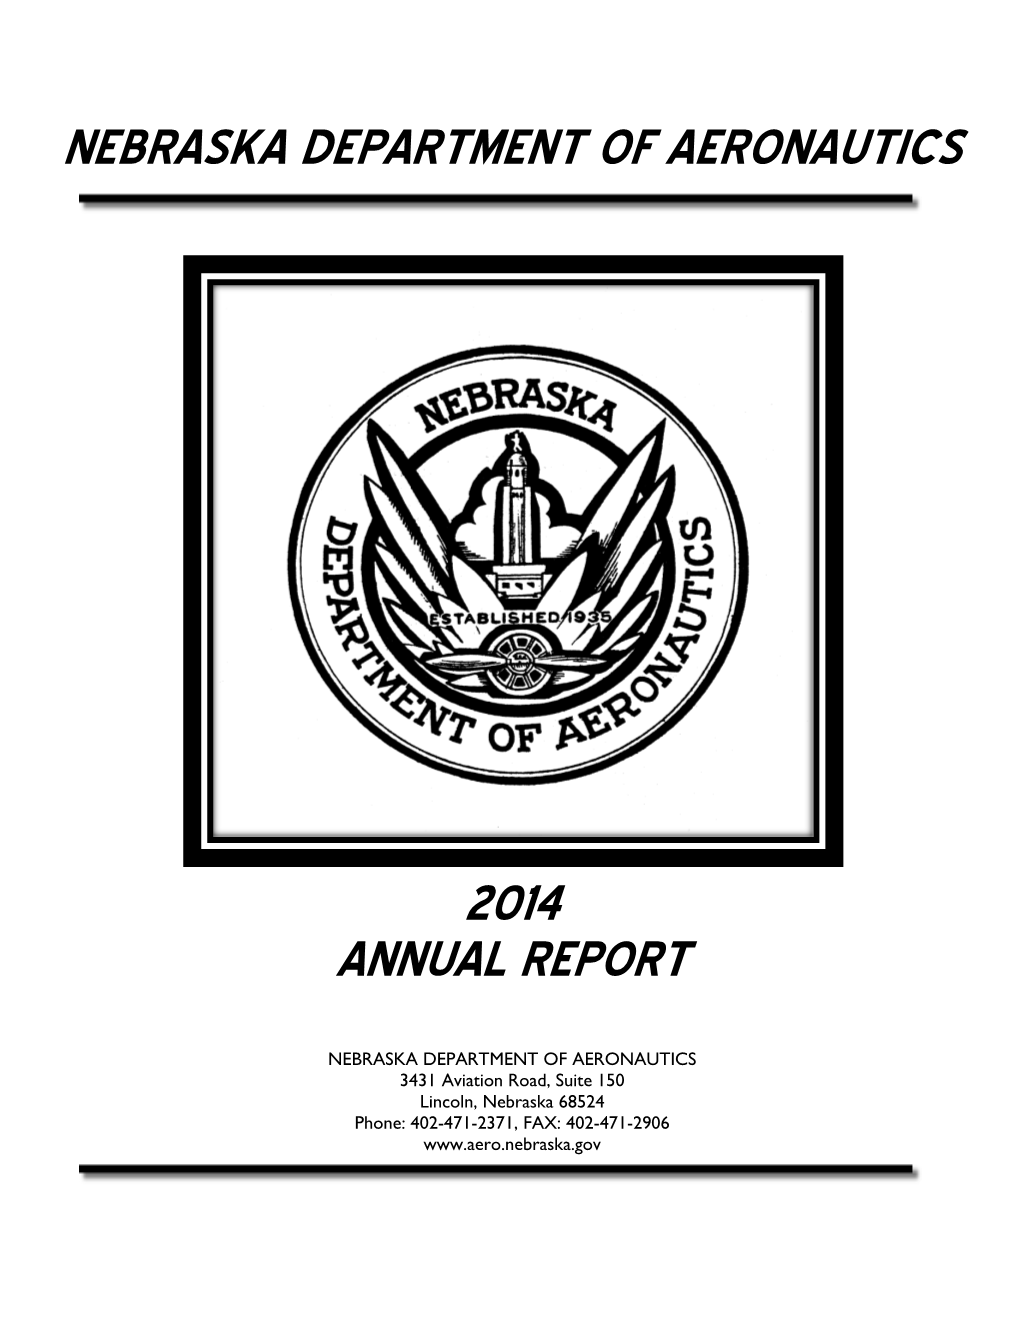 Nebraska Department of Aeronautics 2014 Annual Report